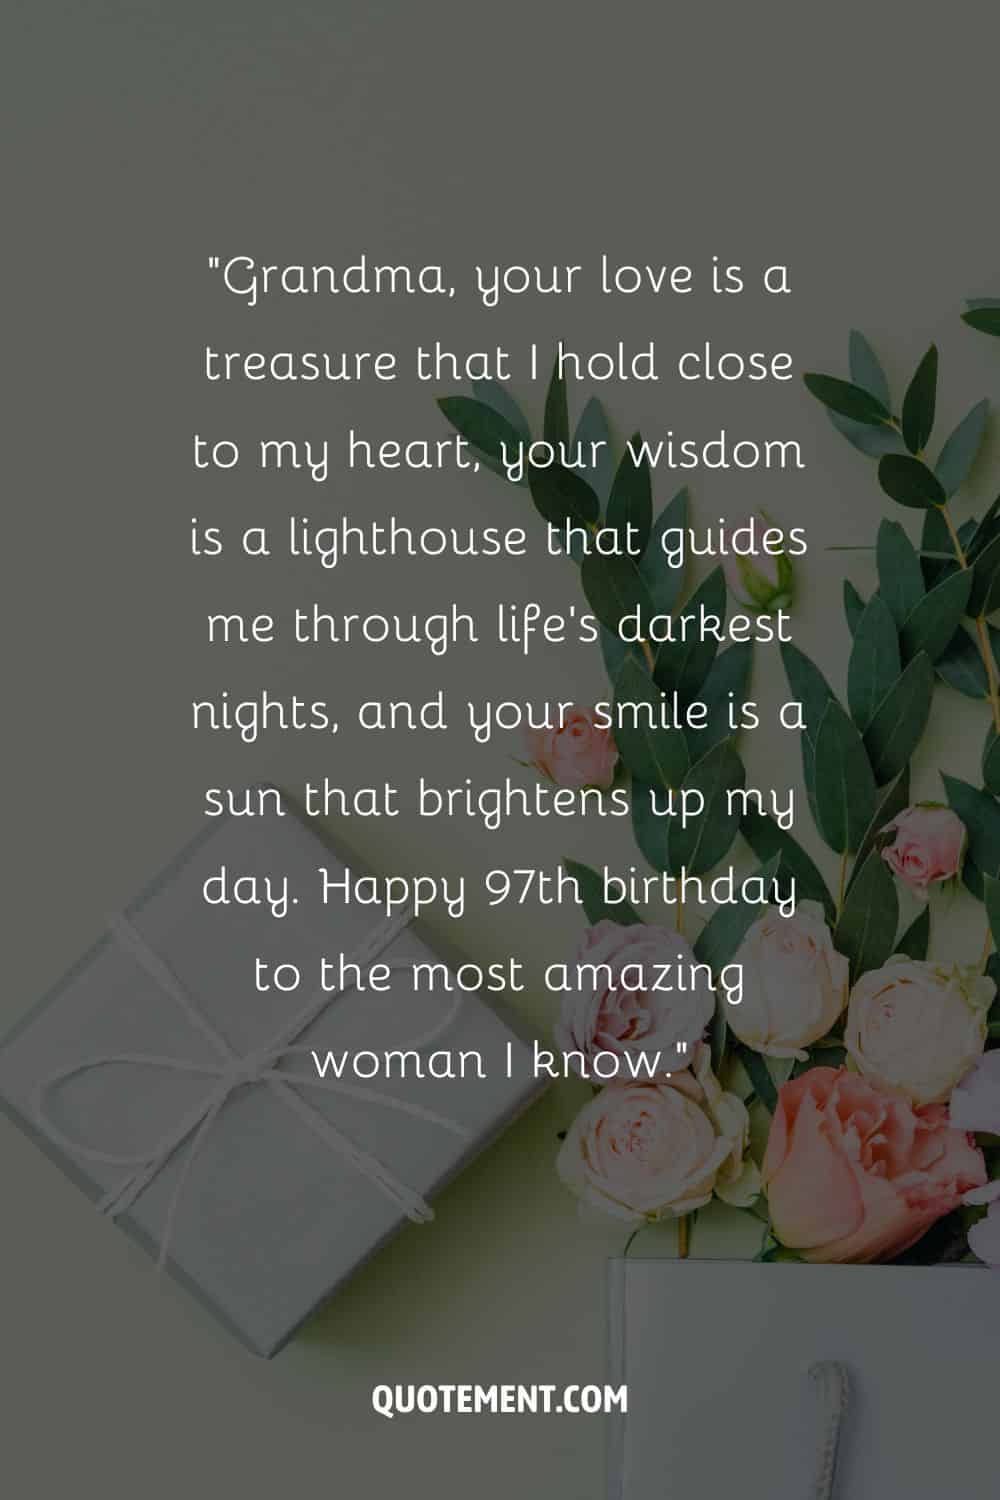 Bonito mensaje para una abuela que cumple 97 años y un regalo y rosas de fondo también